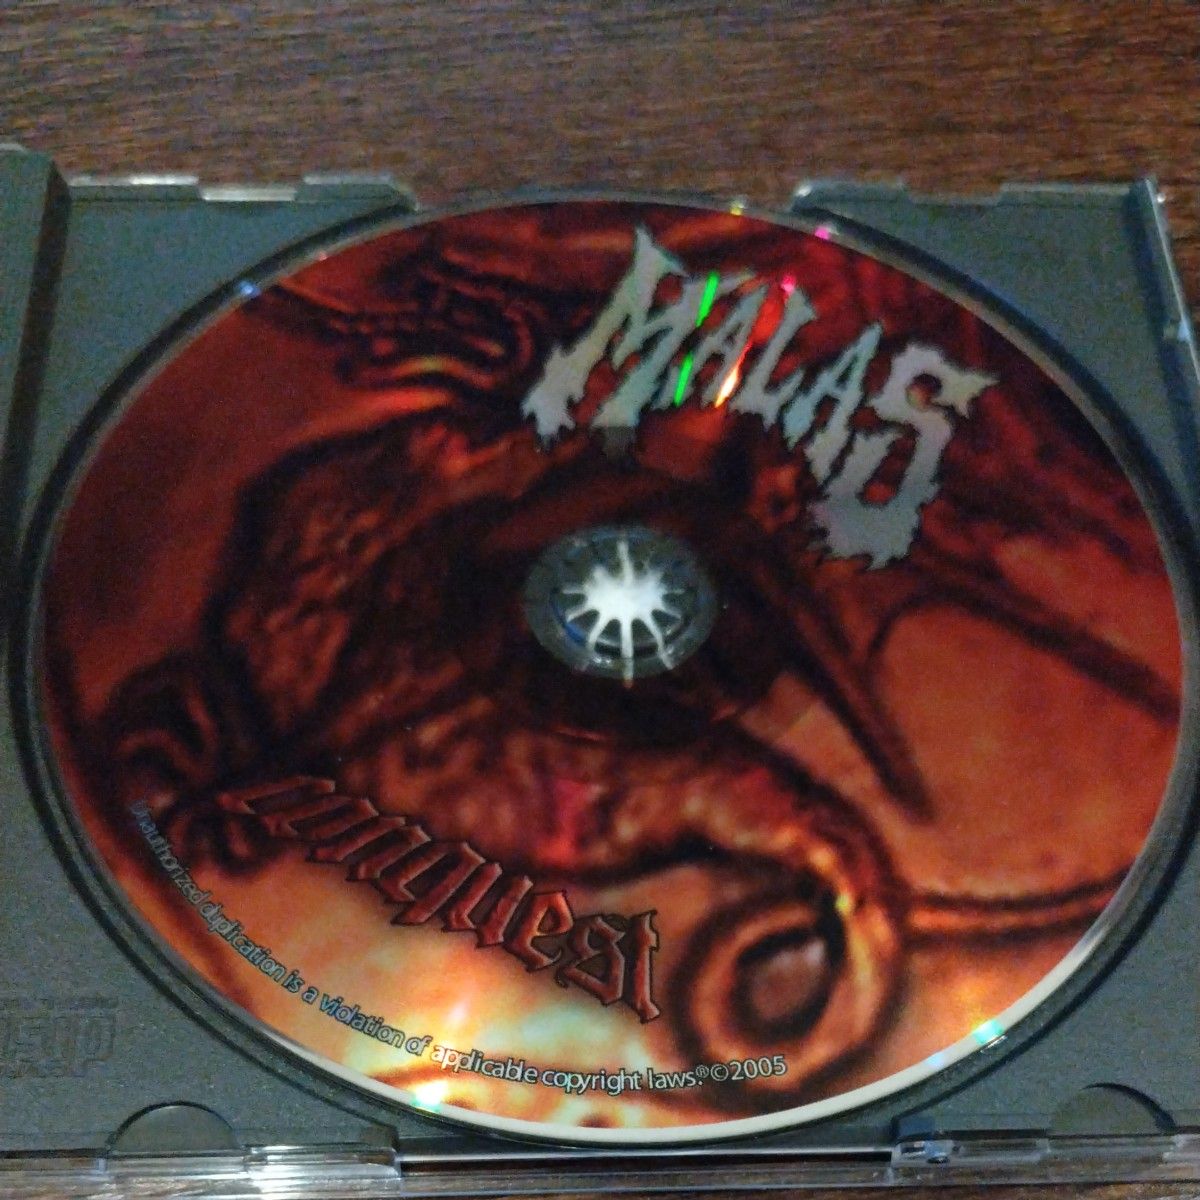 MALAS「CONQUEST」輸入盤中古CD